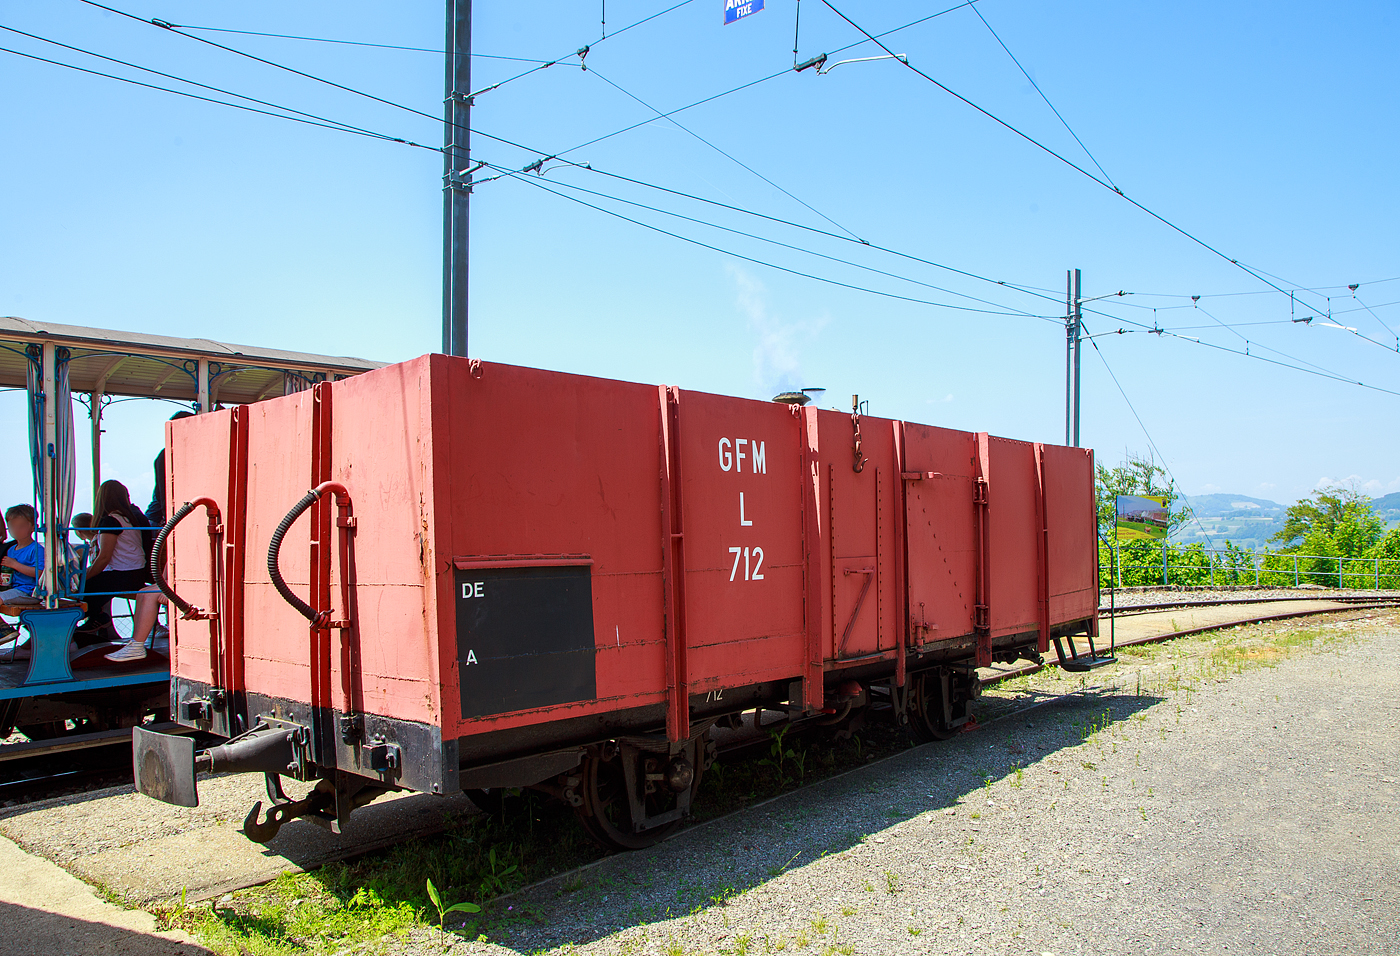 Der zweiachsige offene Güterwagen (Hochbordwagen) mit einer Bremserbühne, ex GFM L 712, ex TPF Ek 712  (Chemins de fer Fribourgeois, ab 2000 tpf - Transports publics fribourgeois SA / Freiburgische Verkehrsbetriebe AG), seit 2002 im Bestand der Museumsbahn Blonay–Chamby, abgestellt am 27.05.2023 beim Bahnhof Chamby.

Vier baugleiche dieser zweiachsigen schmalspurigen Wagen (L 711 bis L 714) wurden 1905 von SWS Schlieren (Schweizerische Wagons- und Aufzügefabrik AG) für die GMF gebaut. Der Wagen L 712 (Ek 712) ging 2002 von der TPF an die BC.

TECHNISCHE DATEN 
Typ: L (später Ek)
Baujahr: 1905
Hersteller: SWS Schlieren
Spurweite: 1.000 mm (Meterspur)
Achsanzahl: 2 
Länge über Puffer: 7.700 mm
Achsabstand: 3.150 mm
Eigengewicht: 5,4 t
Nutzlast: 10,0 t

Quelle: Museumsbahn BC
